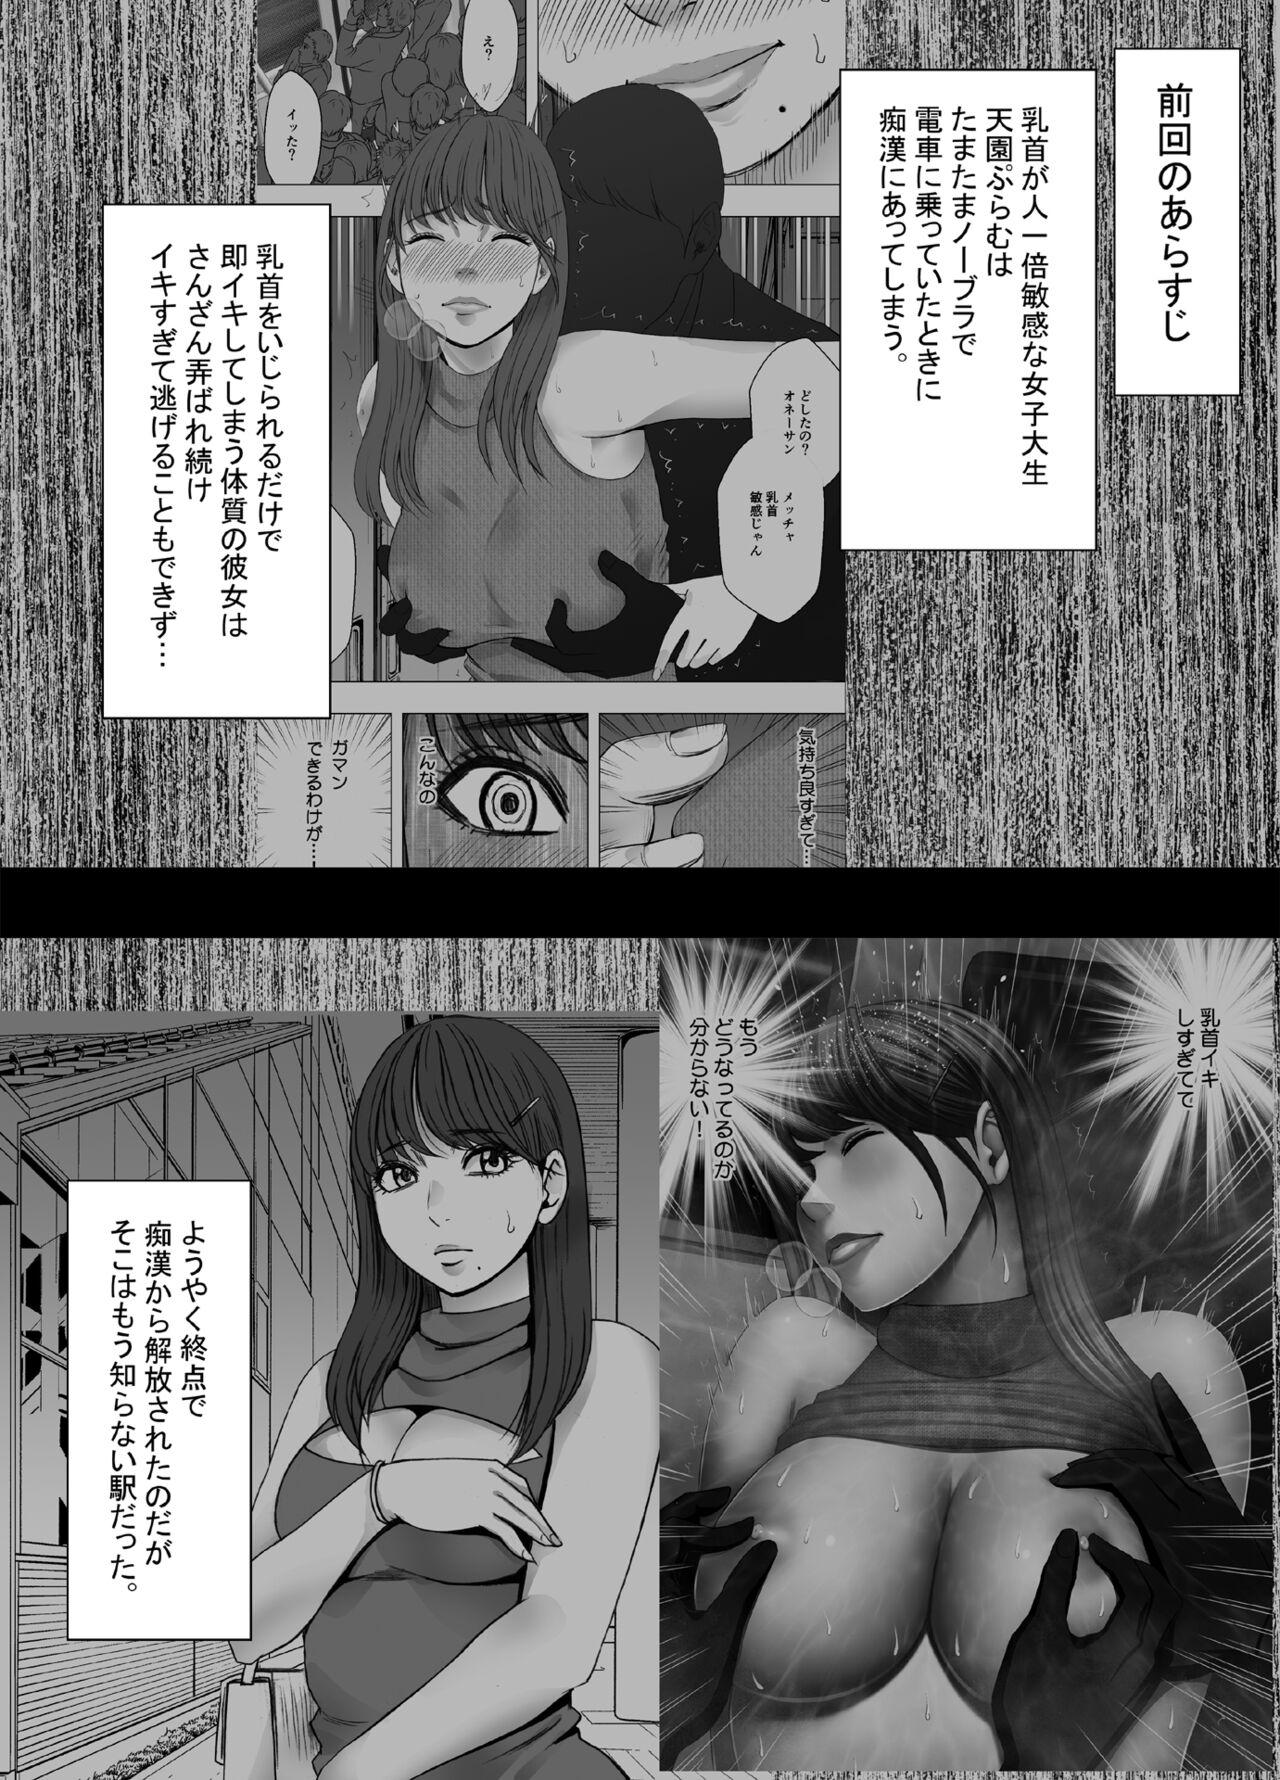 Ikillitts Chikubi de Sokuiki suru Joshidaisei 4 - Original Flash - Page 2